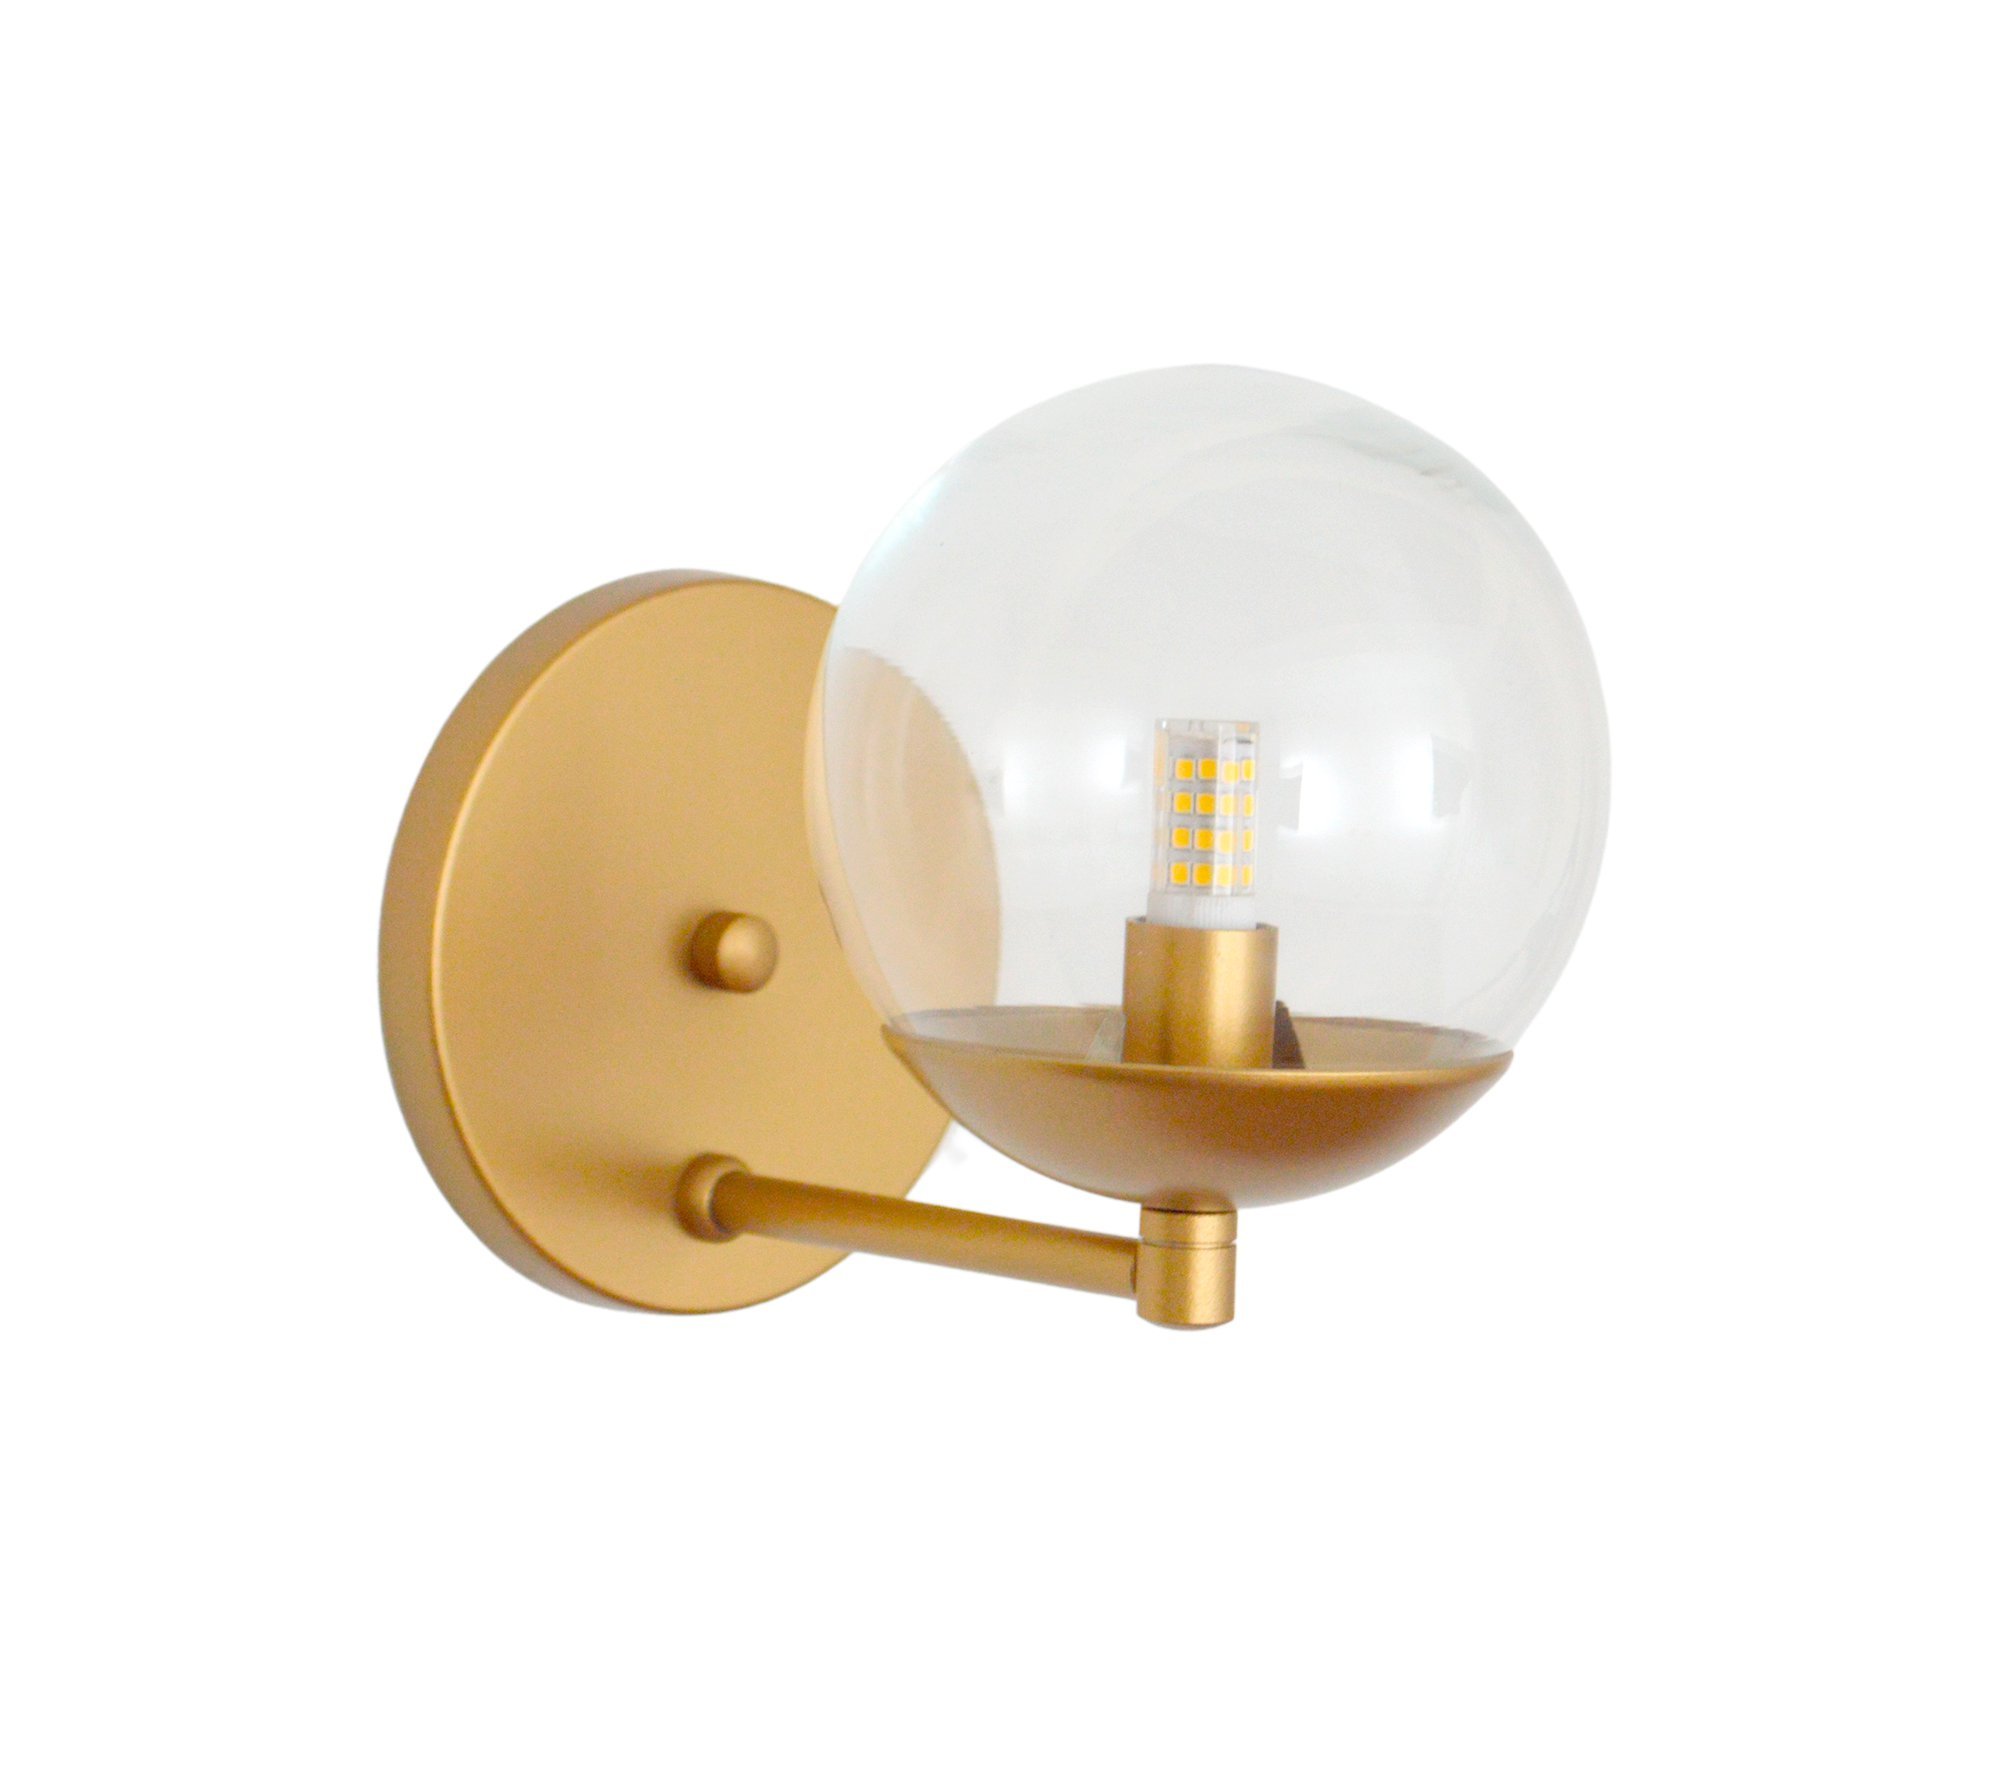 Arandela Jabuticaba Dourada bola/globo de vidro Cristal.:Dourado - 1